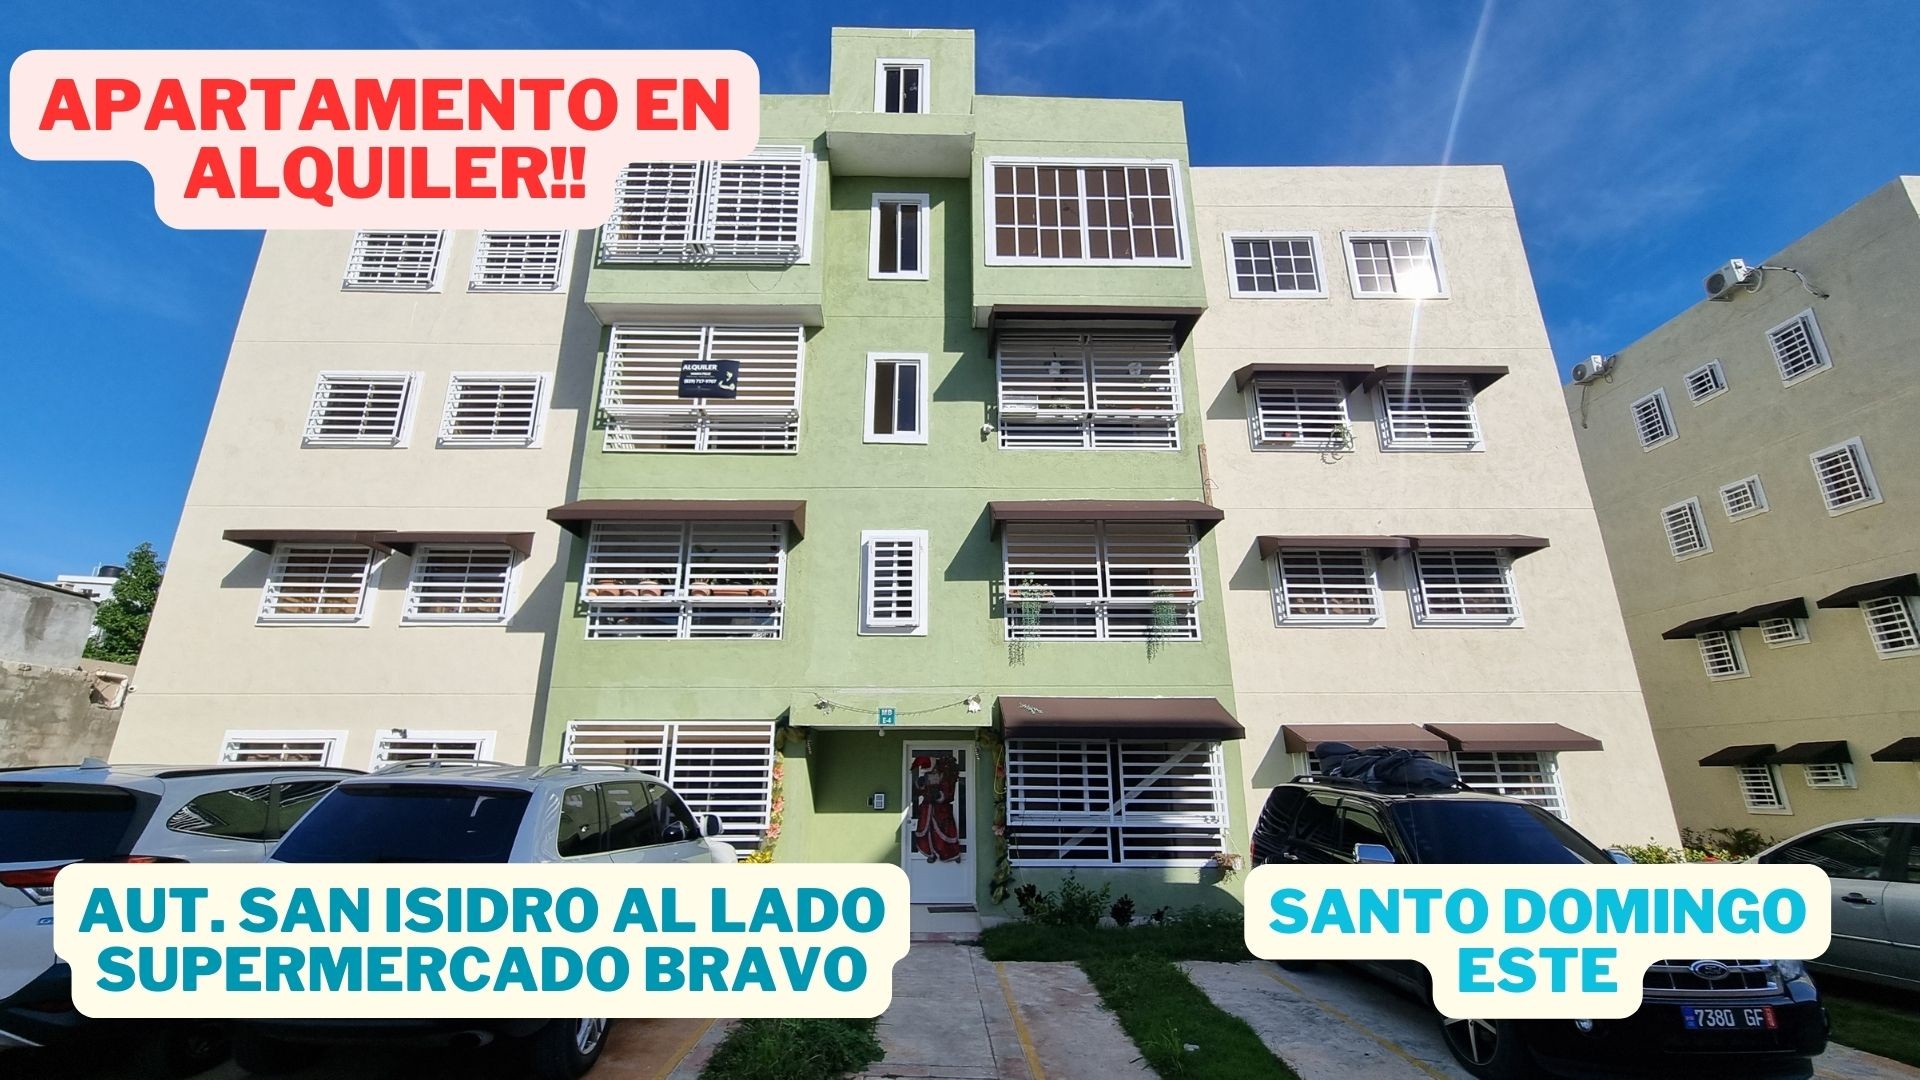 apartamentos - Alquiler de Apto. al lado del Supermercado Bravo San Isidro y del Acueducto. 10